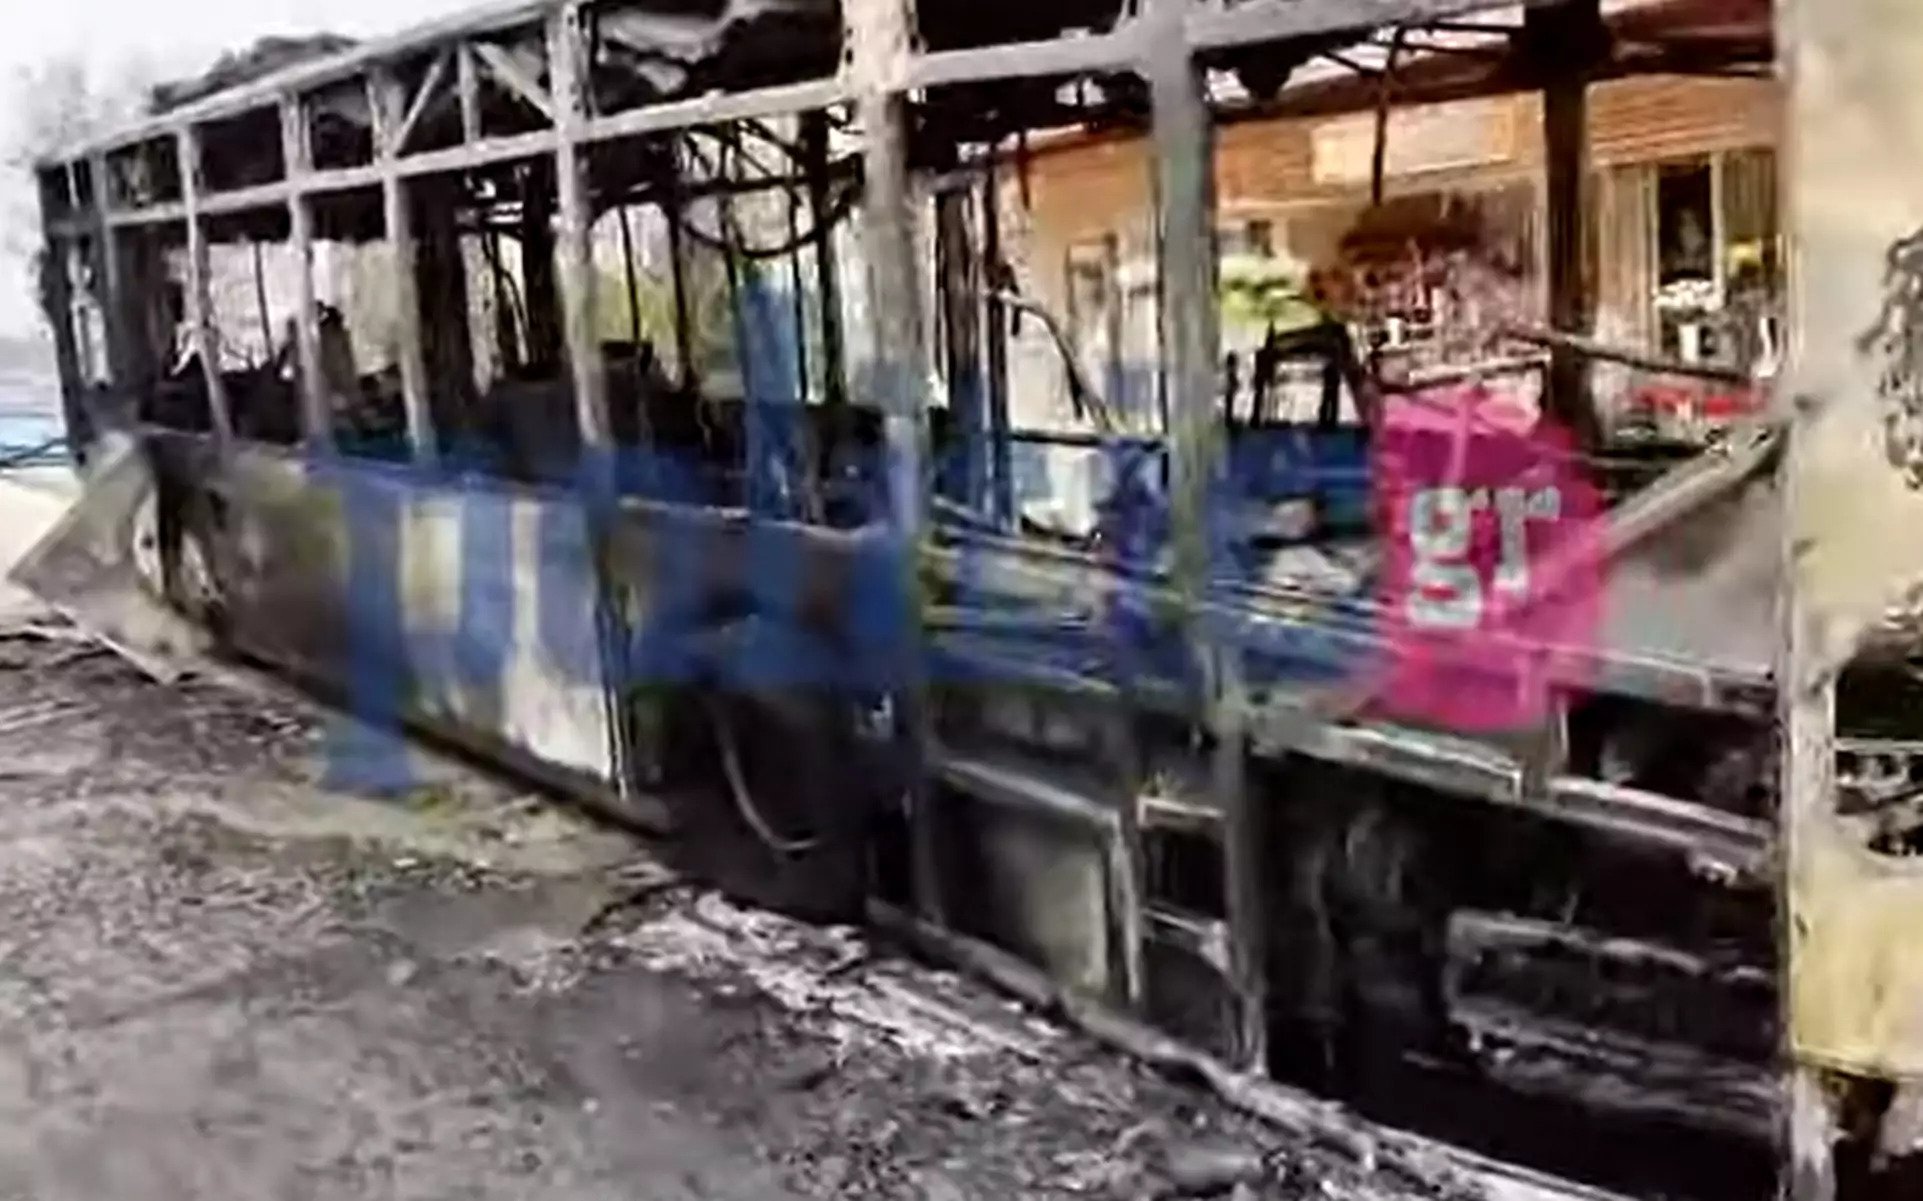 Θεσσαλονίκη: Λεωφορείο του ΟΑΣΘ άρπαξε φωτιά